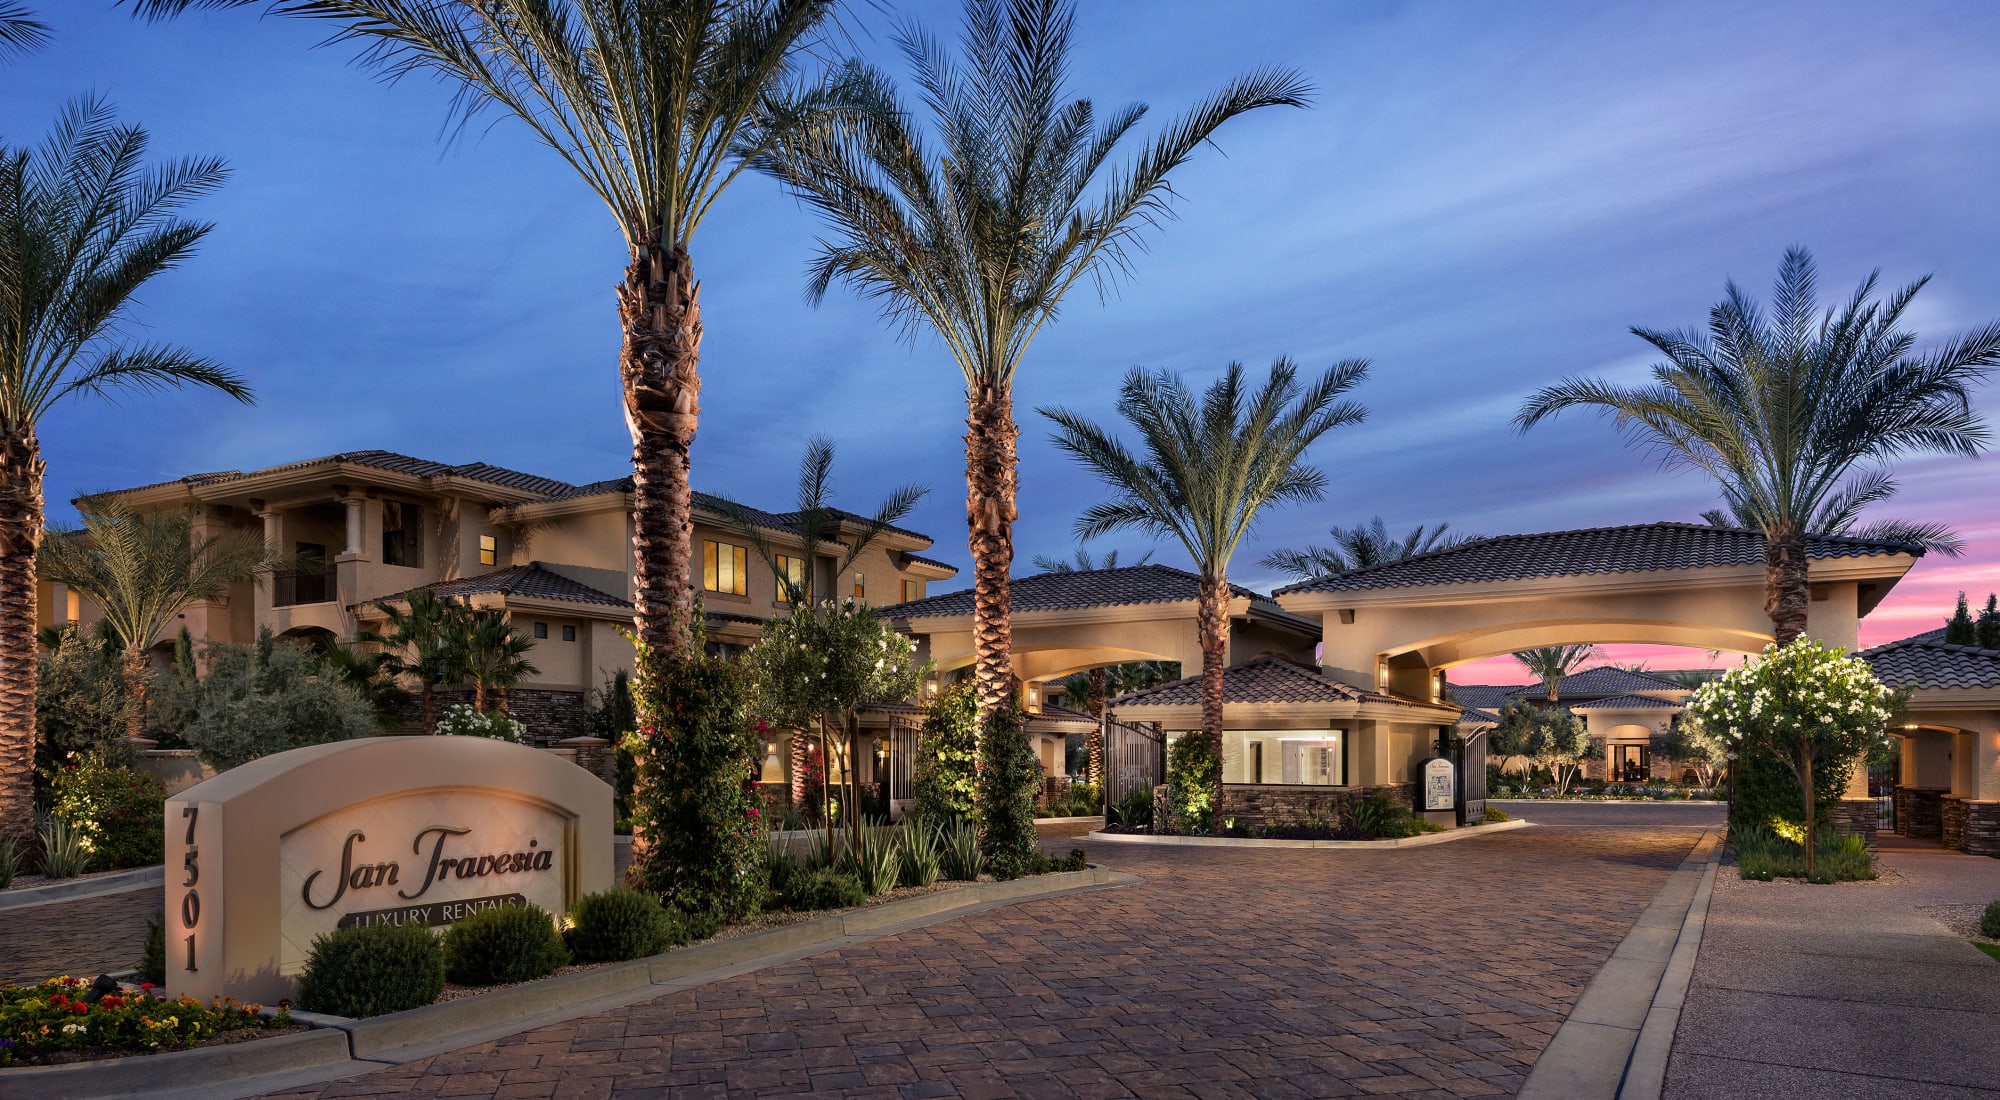 San Travesia: Scottsdale, AZ Luxury Apartments for Rent